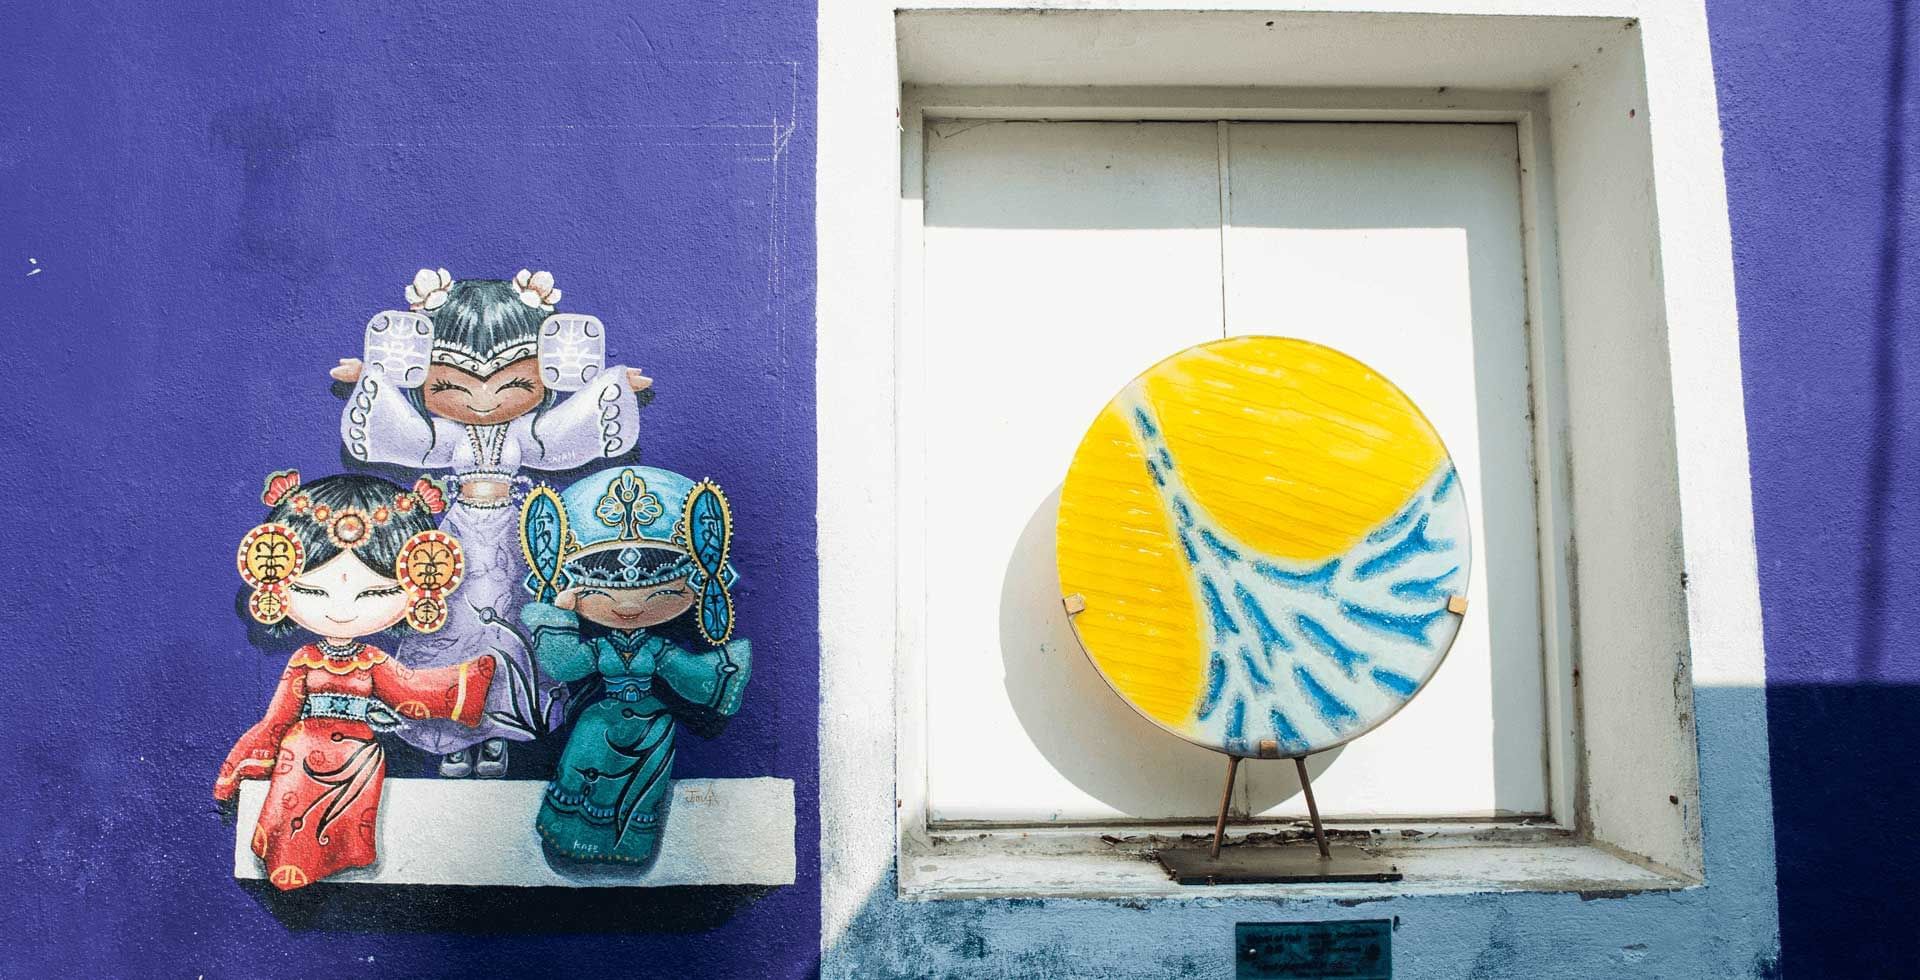 Cute street art mural in George Town, Penang